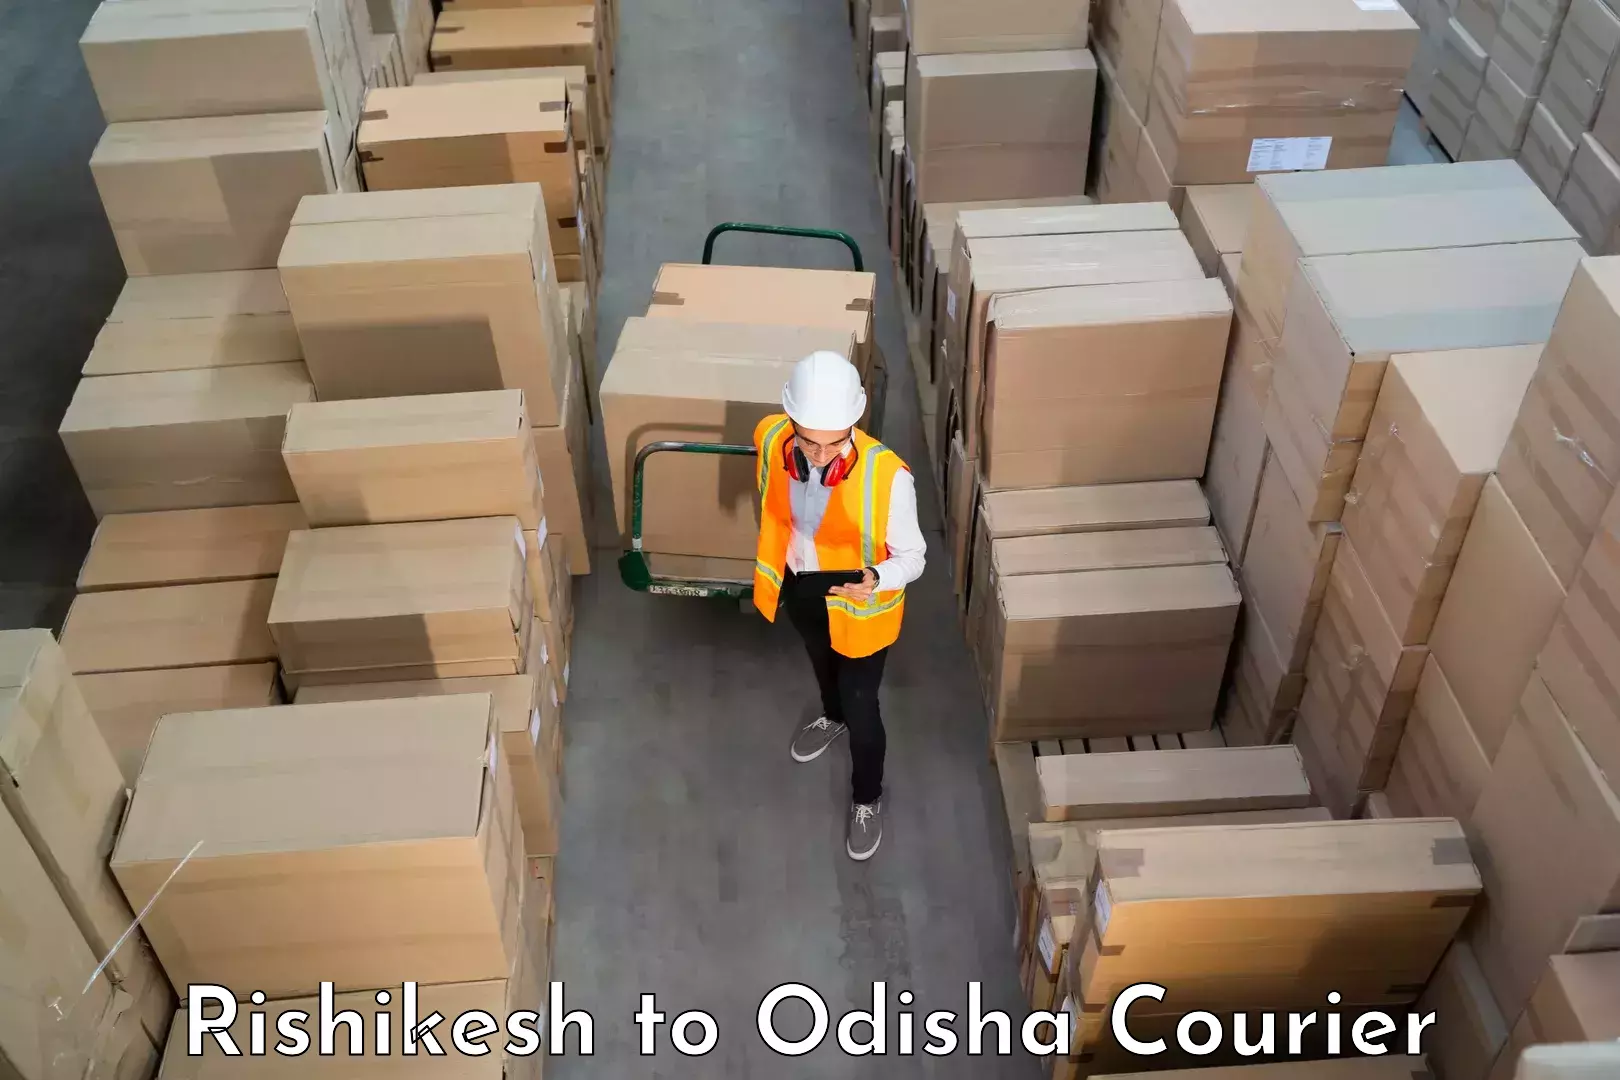 Furniture moving experts Rishikesh to Ganjam